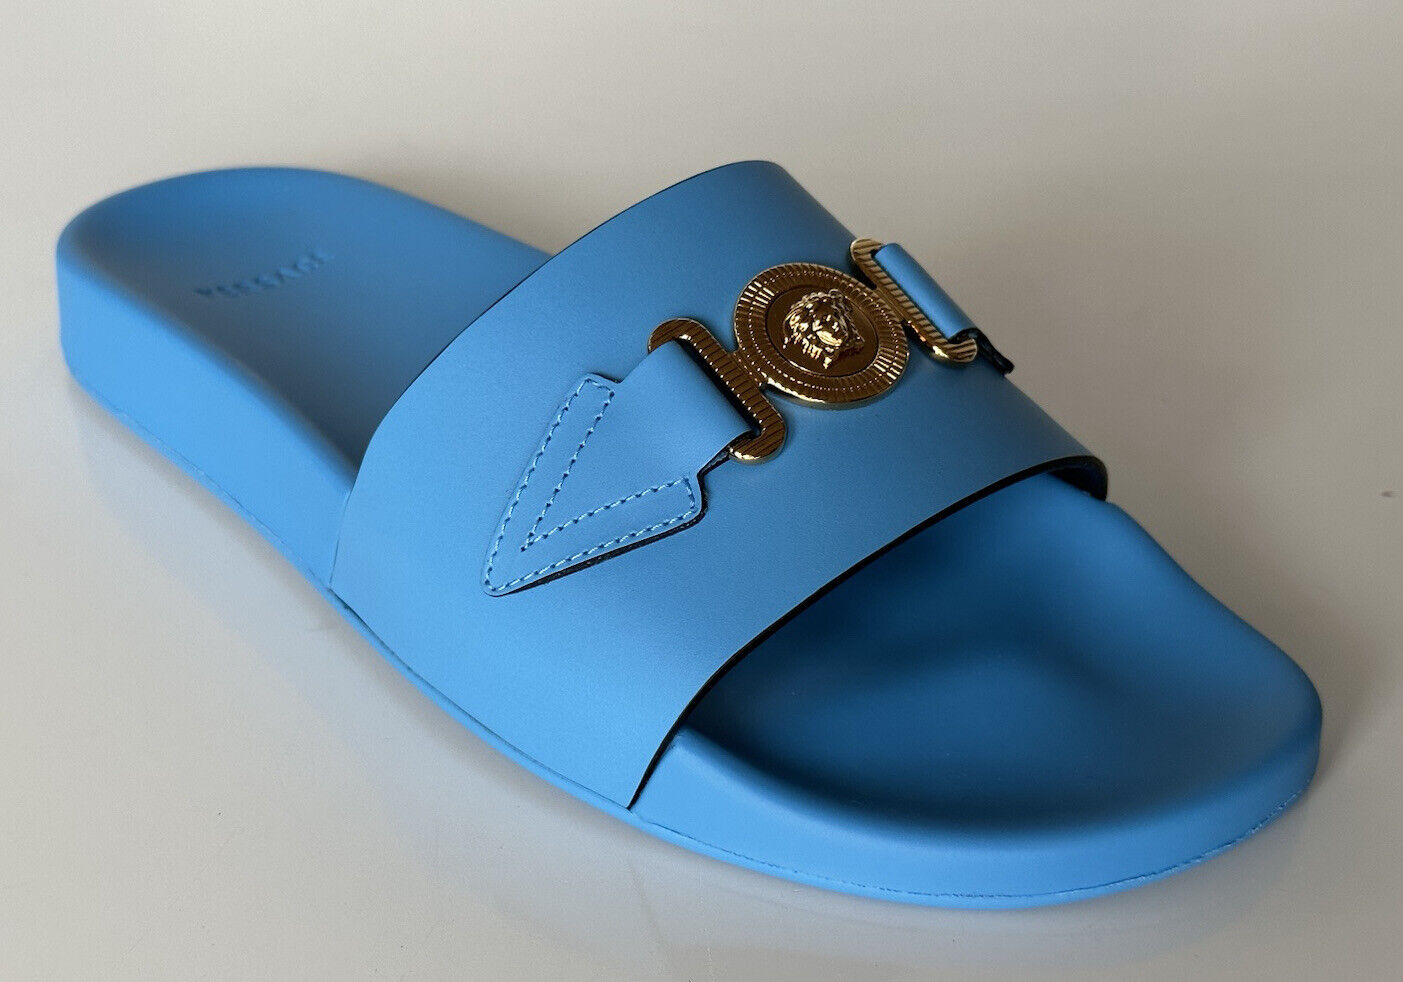 NIB $575 Versace Gold Medusa Leather/Rubber Sandals Blue 11.5 (44.5) 1004983 IT